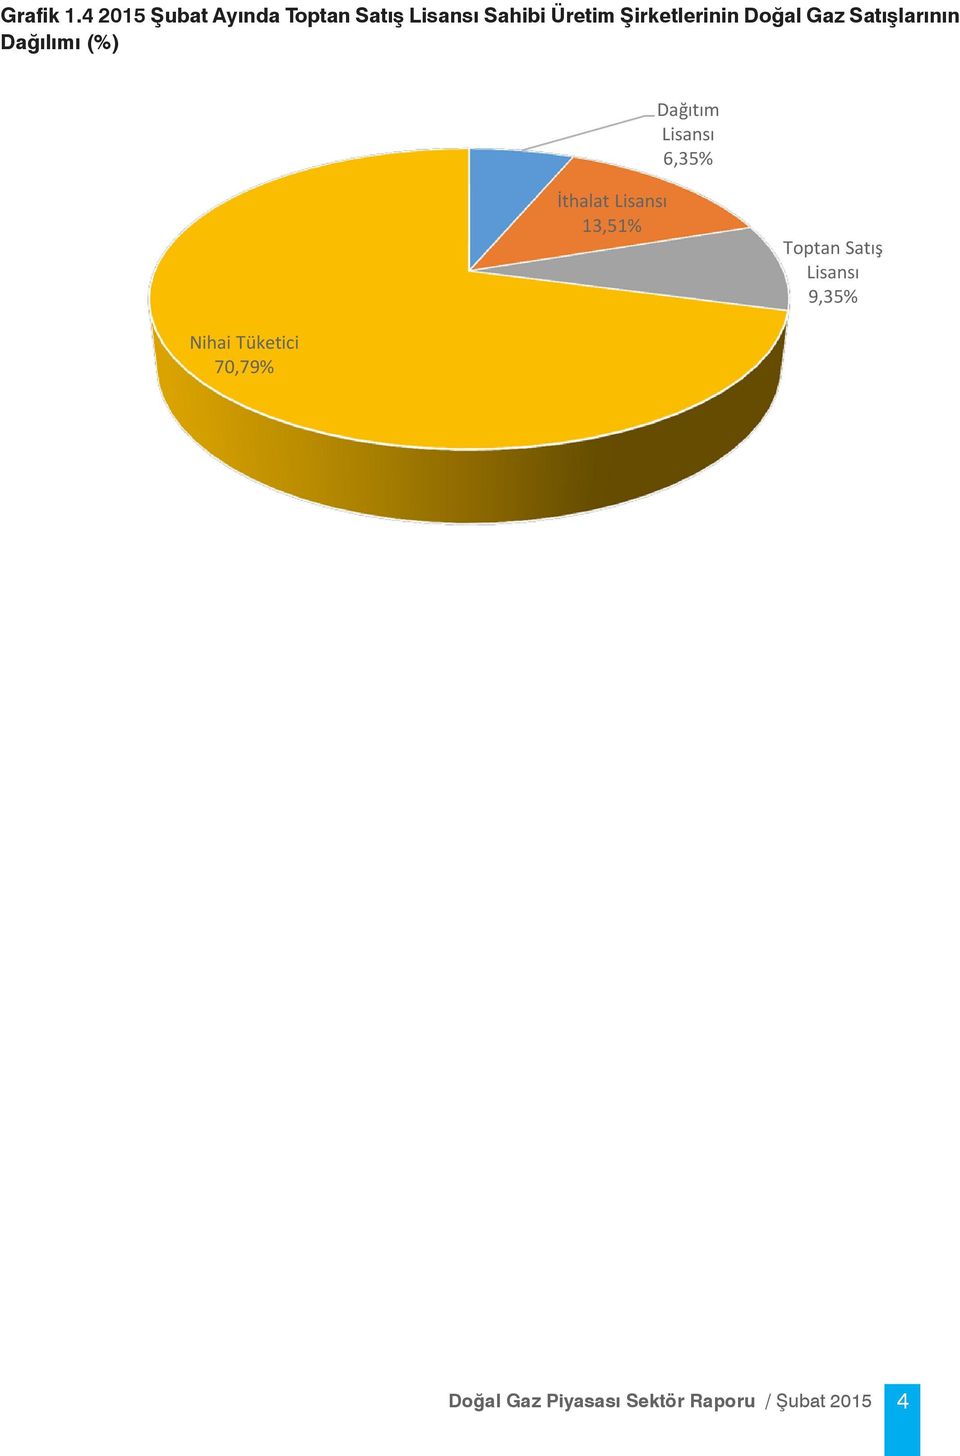 Dağılımı (%)  Dağılımı (%) Dağıtım Lisansı 6,35% İthalat Lisansı 13,51% Toptan Satış